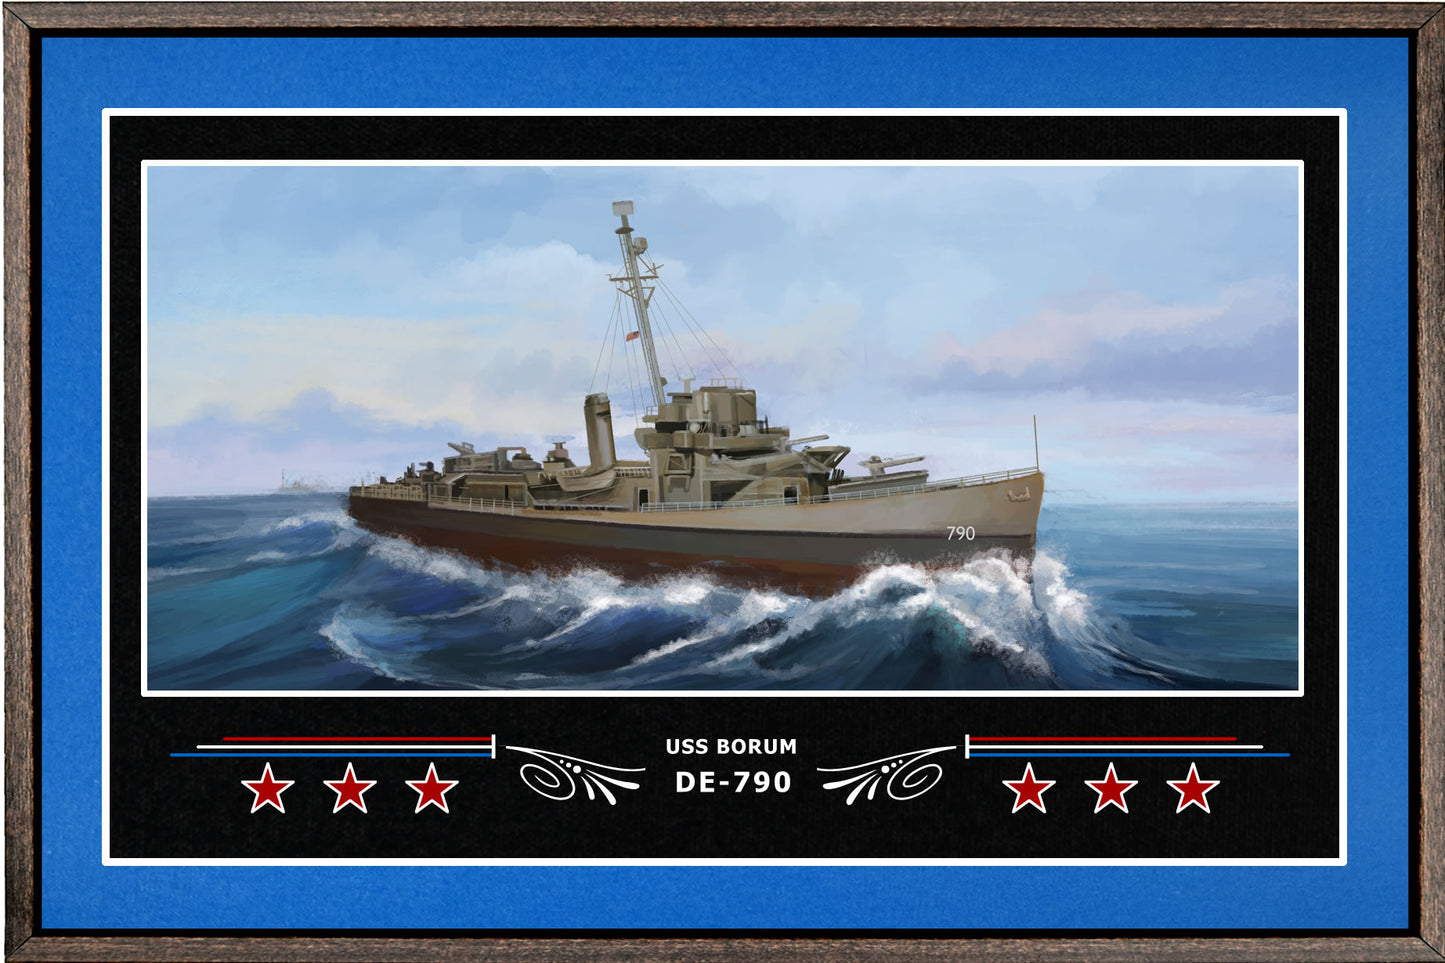 USS BORUM DE 790 BOX FRAMED CANVAS ART BLUE